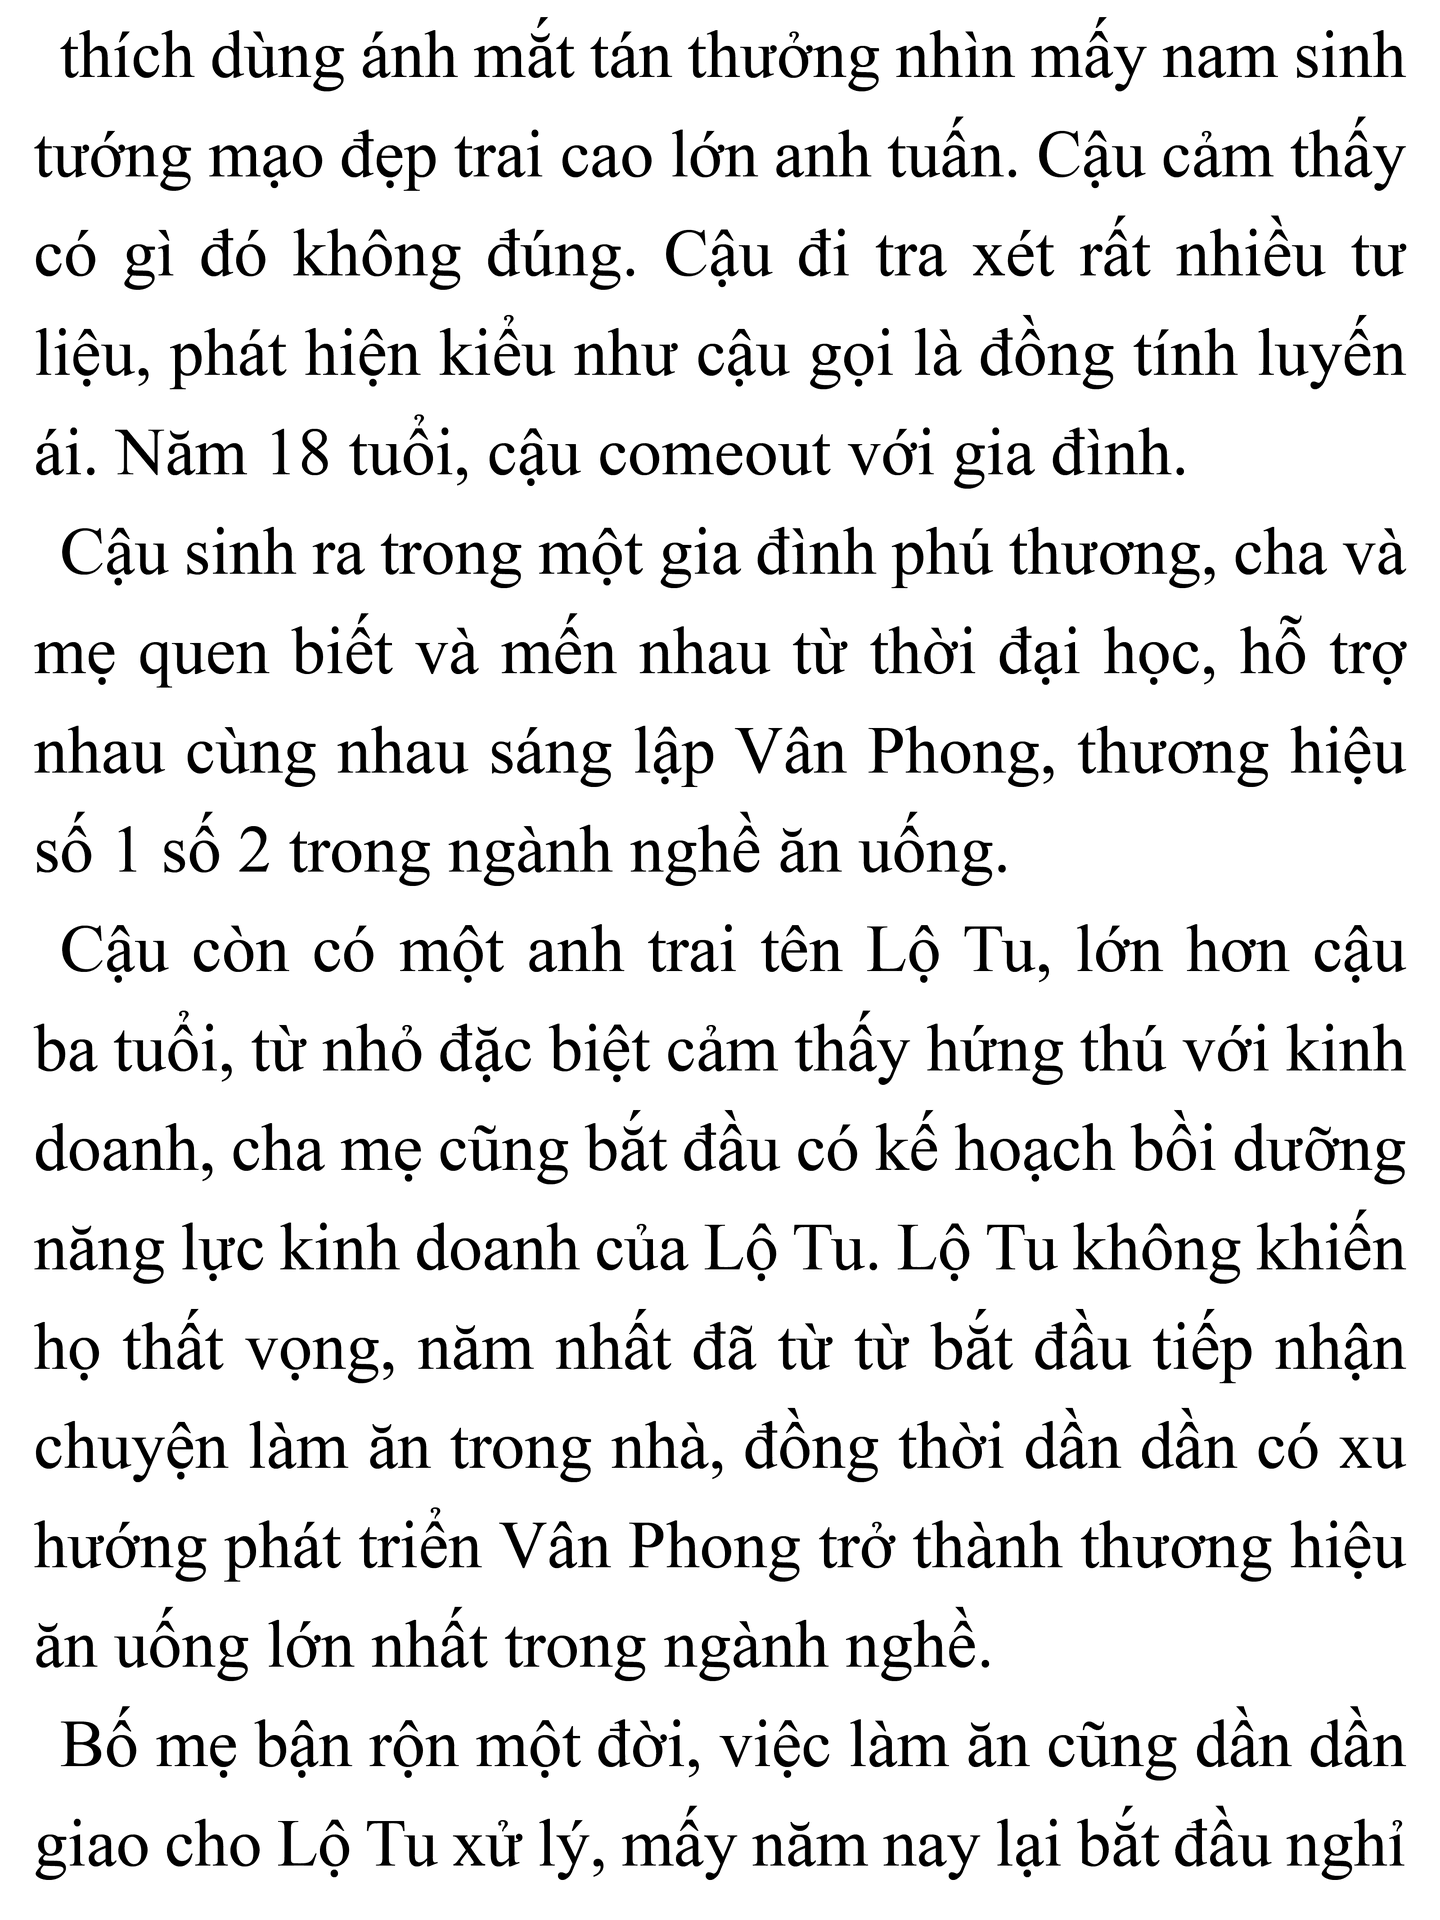 vong-phoi-khi-anh-de-gap-cv-dai-than-2-1